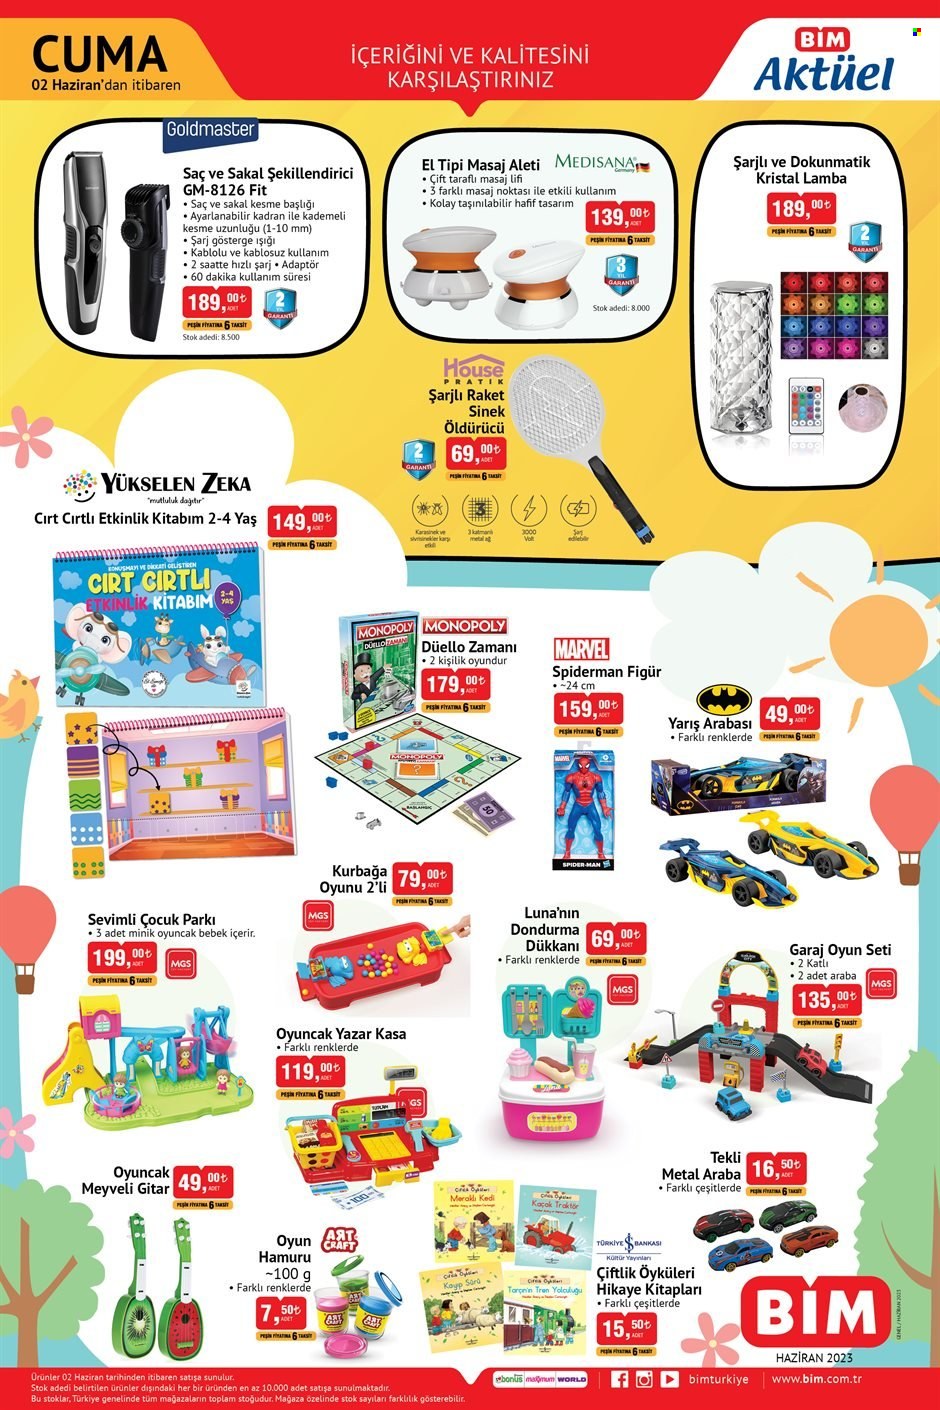 BİM aktüel ürünler, broşür  - 6.2.2023 - 6.15.2023 - Satıştaki ürünler - oyuncak, eti, dondurma, gitar, Spider, lamba. Sayfa 2.